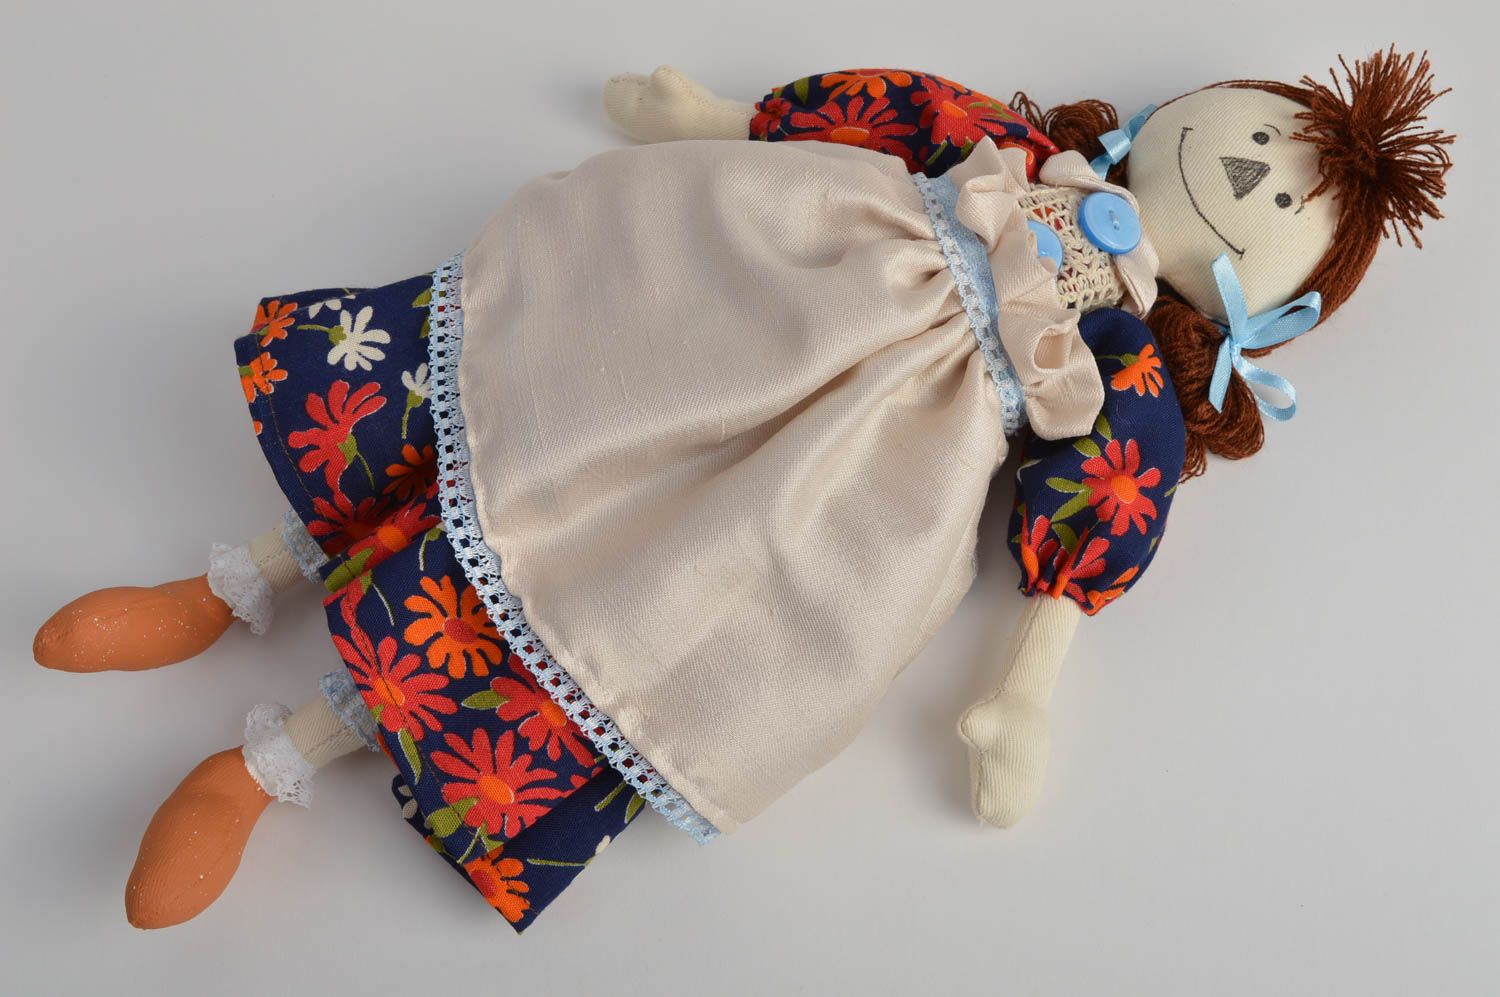 Авторская тканевая кукла хенд мейд Хозяюшка мягкая игрушка для девочки красивая  фото 2